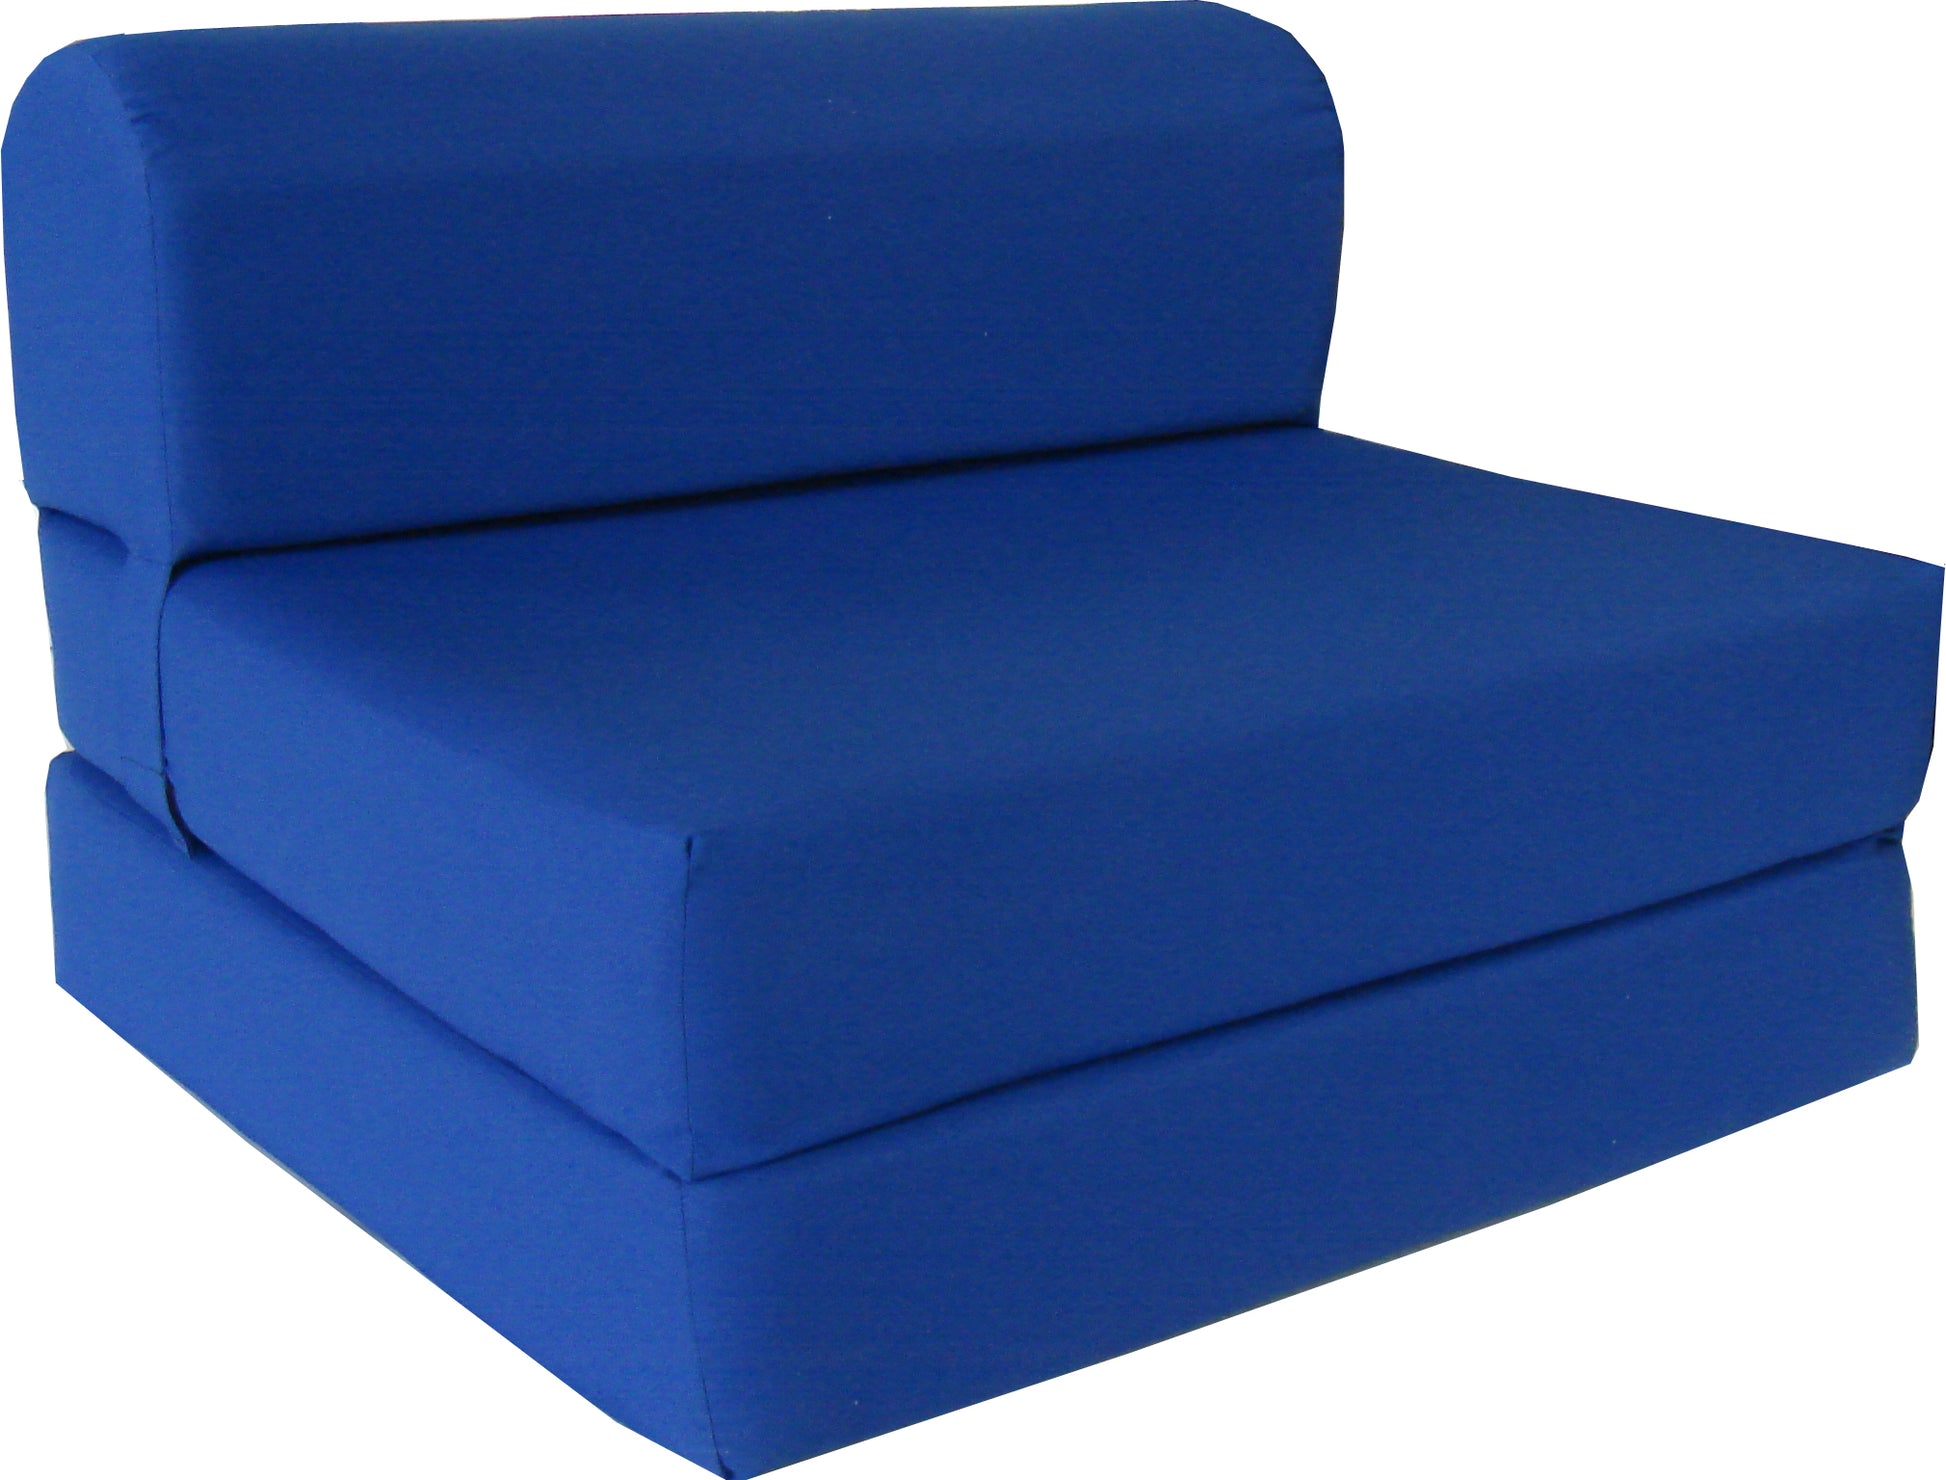 Sleeper Chair Folding foam Beds, Flip Sofa Bed, Portable Foam